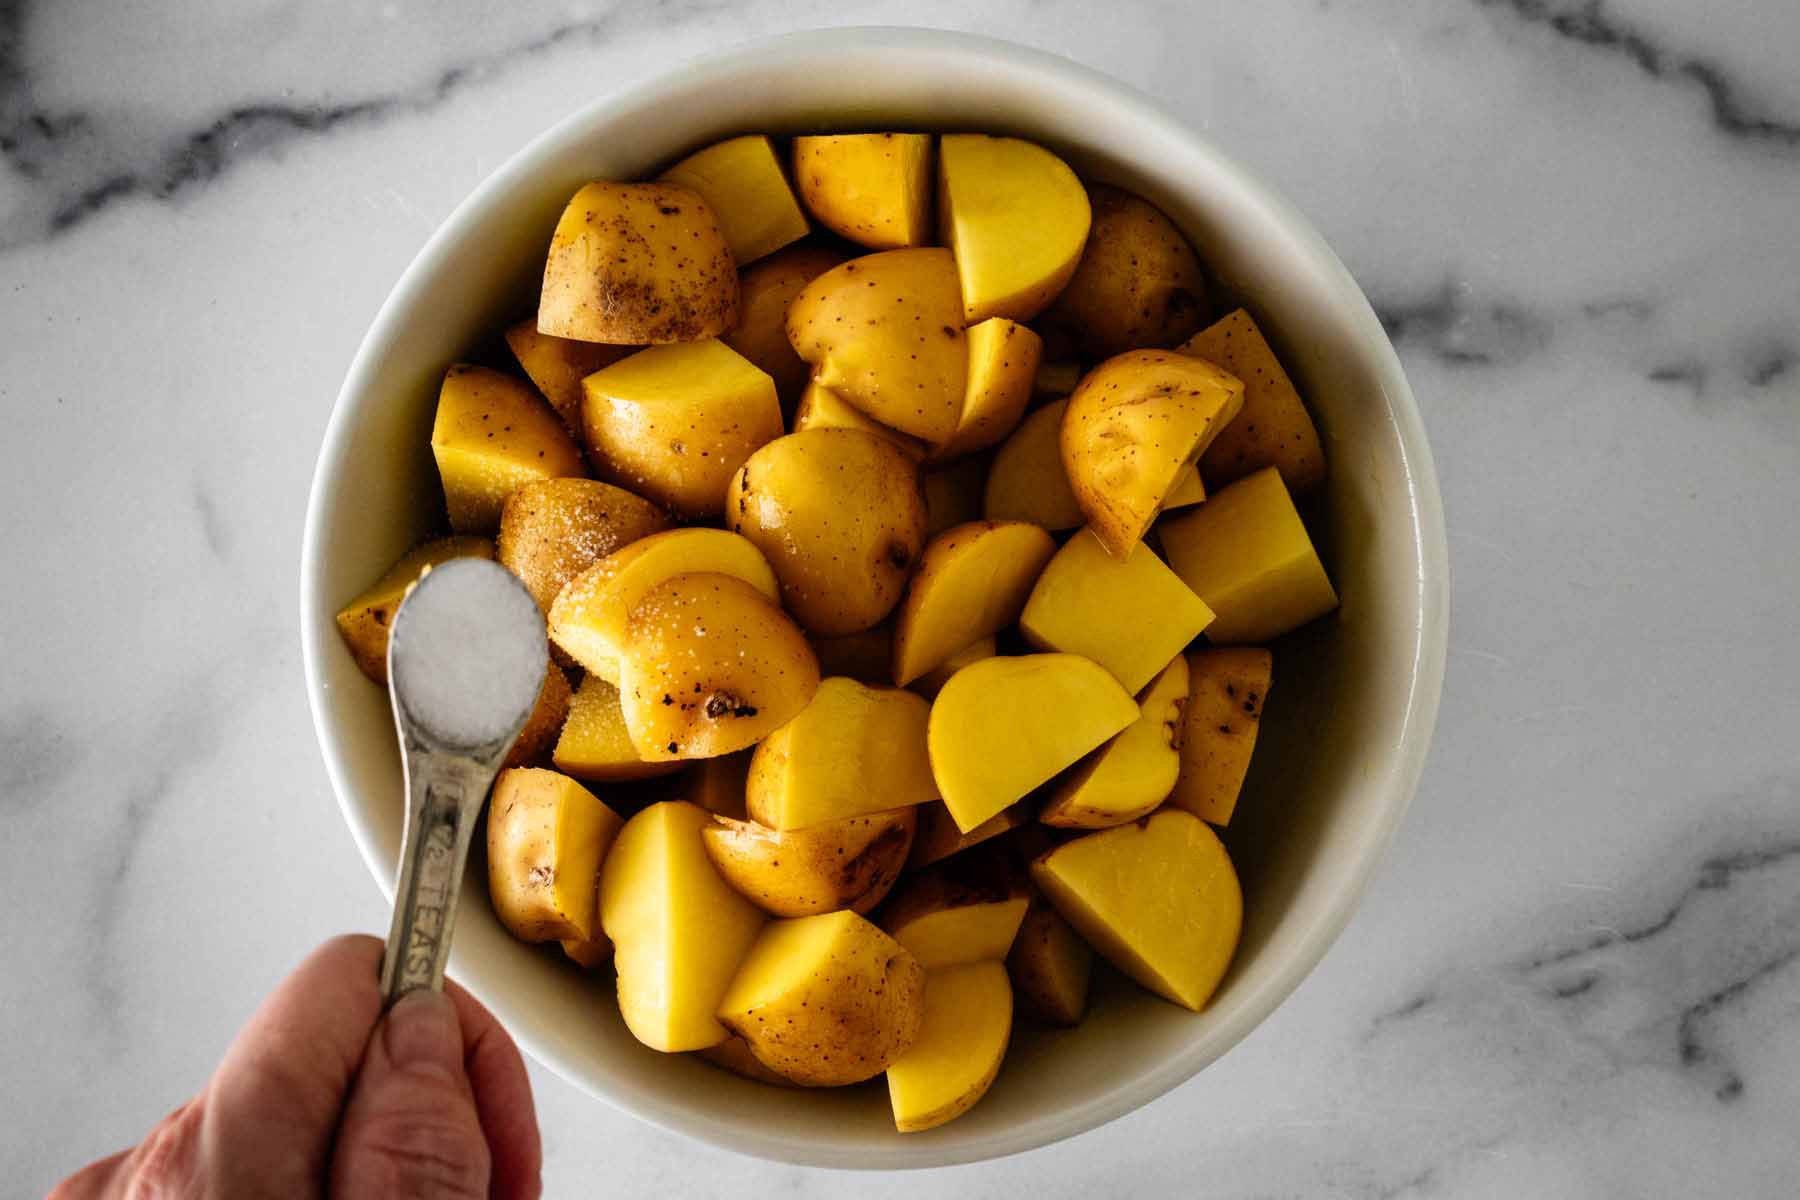 Add salt to chopped golden potatoes.